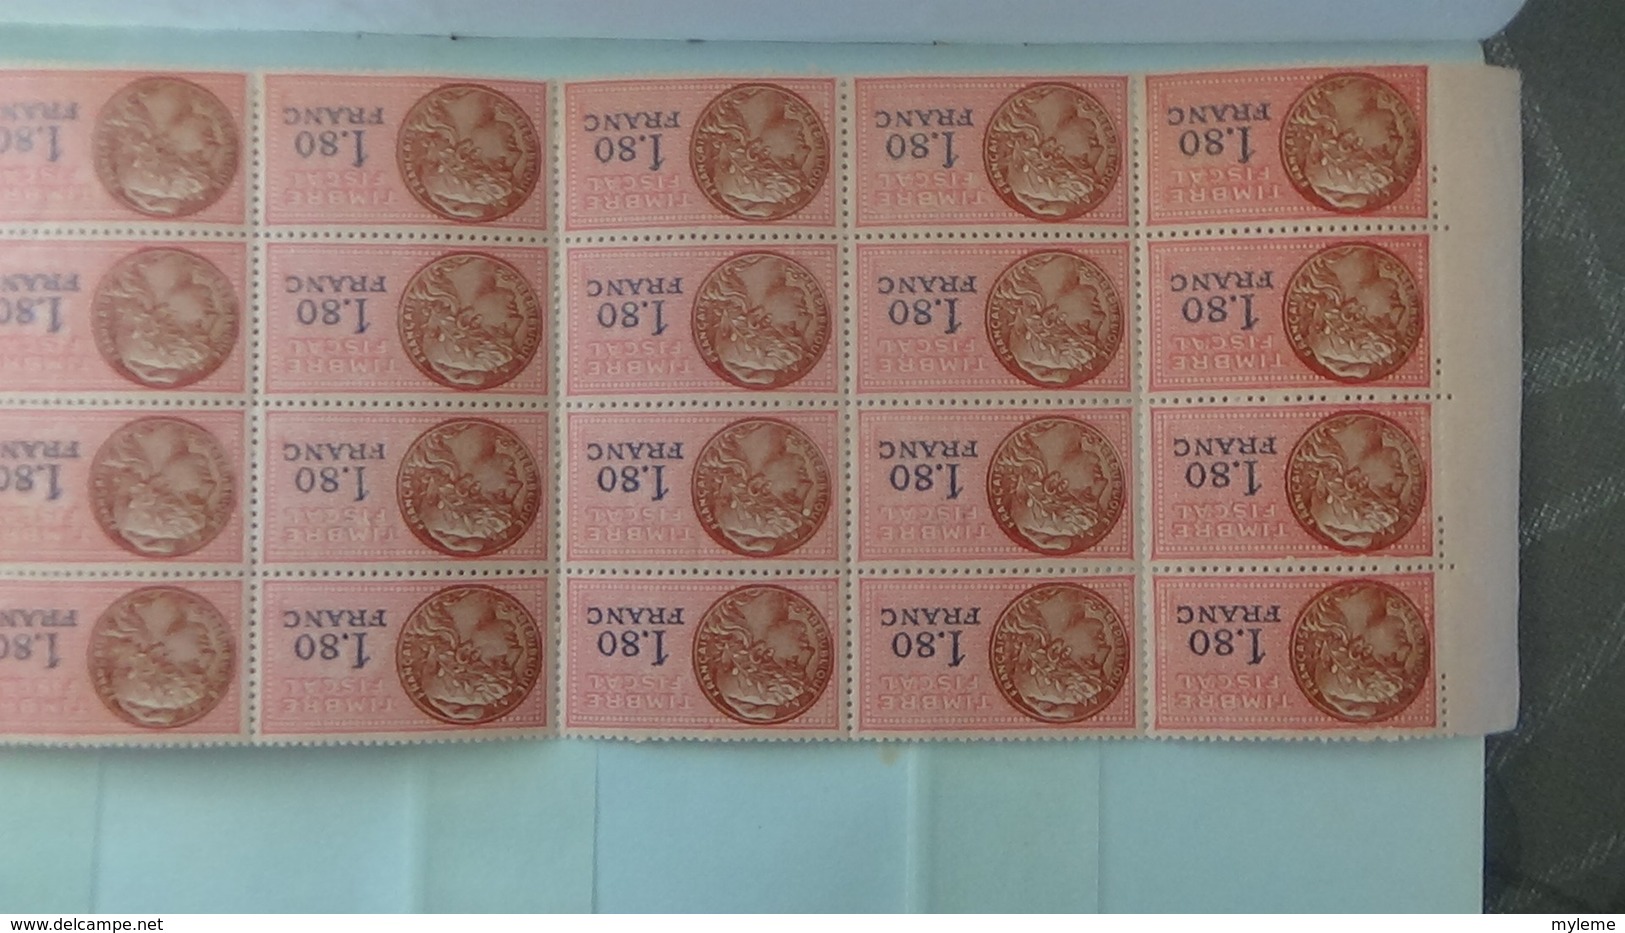 Carnet à choix de 230 timbres fiscaux avec coins datés (et date au verso) tous est **. Côte très sympa !!!